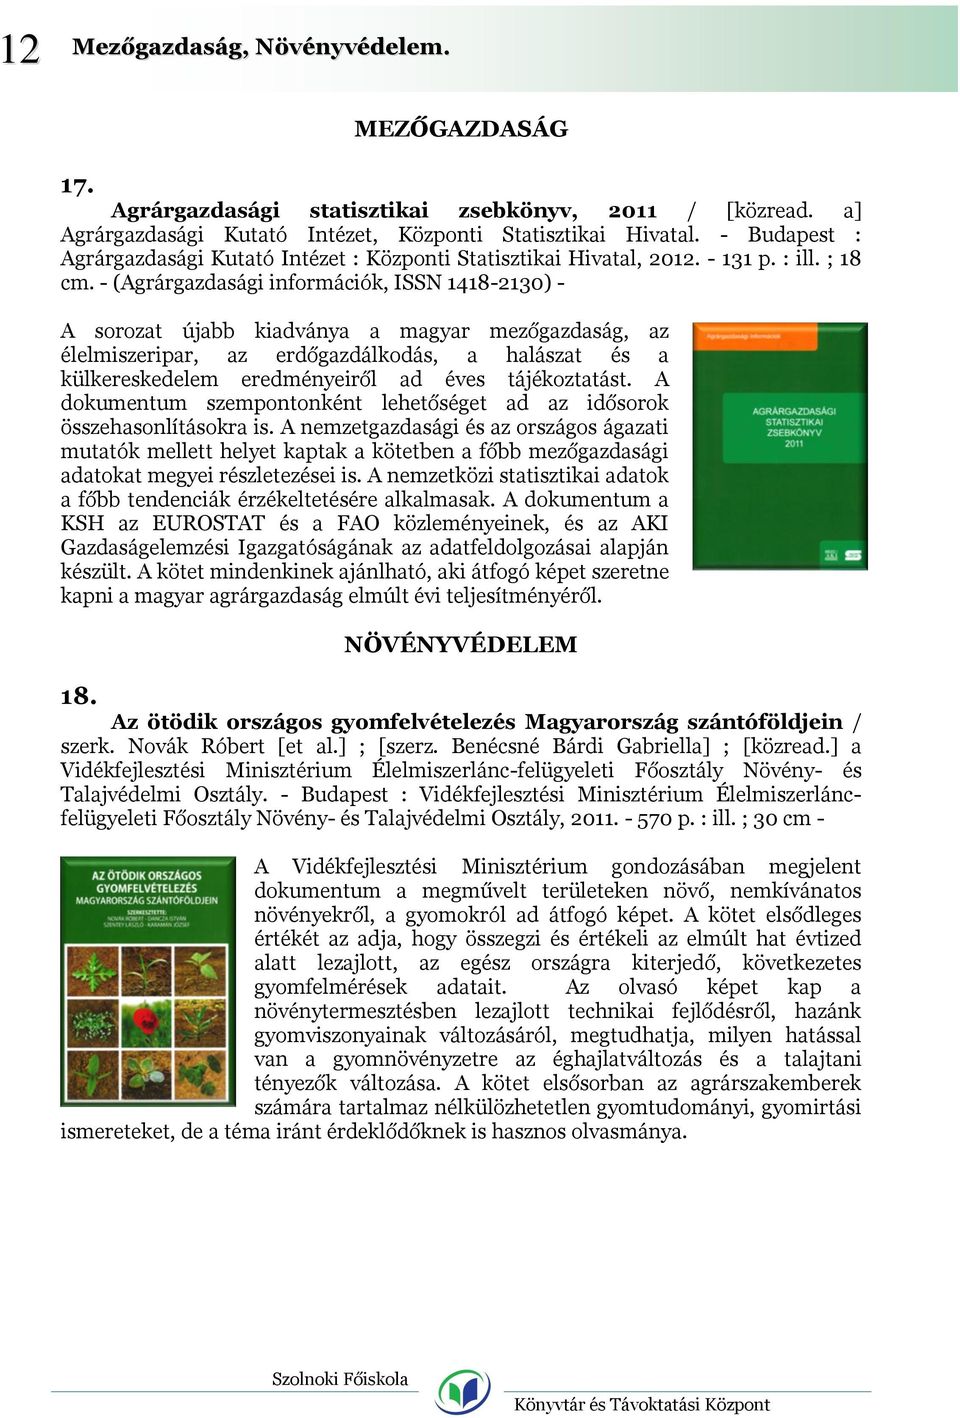 - (Agrárgazdasági információk, ISSN 1418-2130) - A sorozat újabb kiadványa a magyar mezőgazdaság, az élelmiszeripar, az erdőgazdálkodás, a halászat és a külkereskedelem eredményeiről ad éves